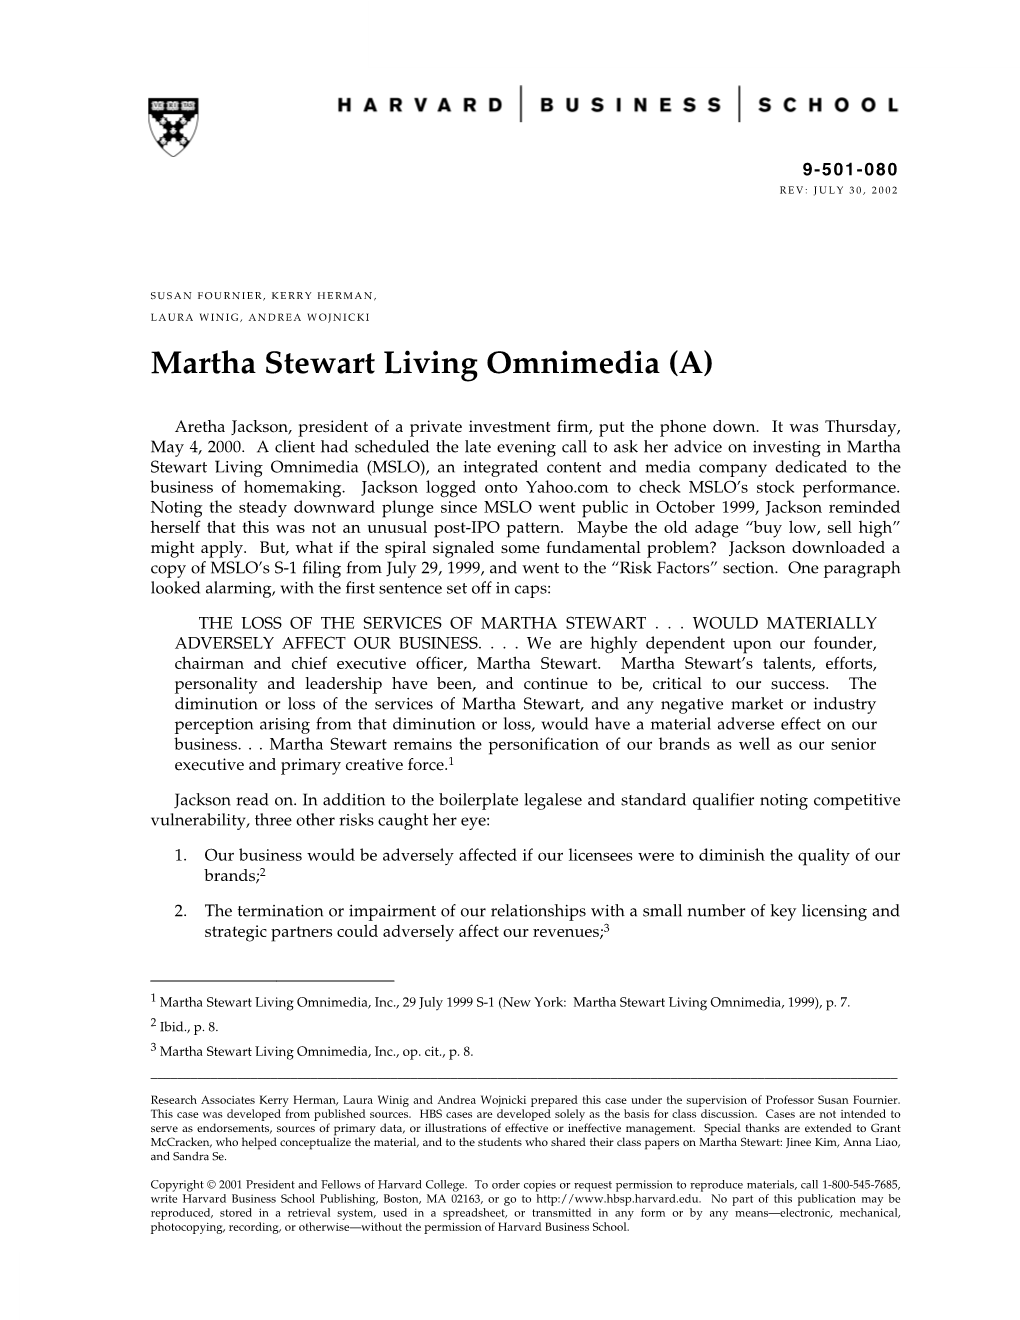 Martha Stewart Living Omnimedia (A)